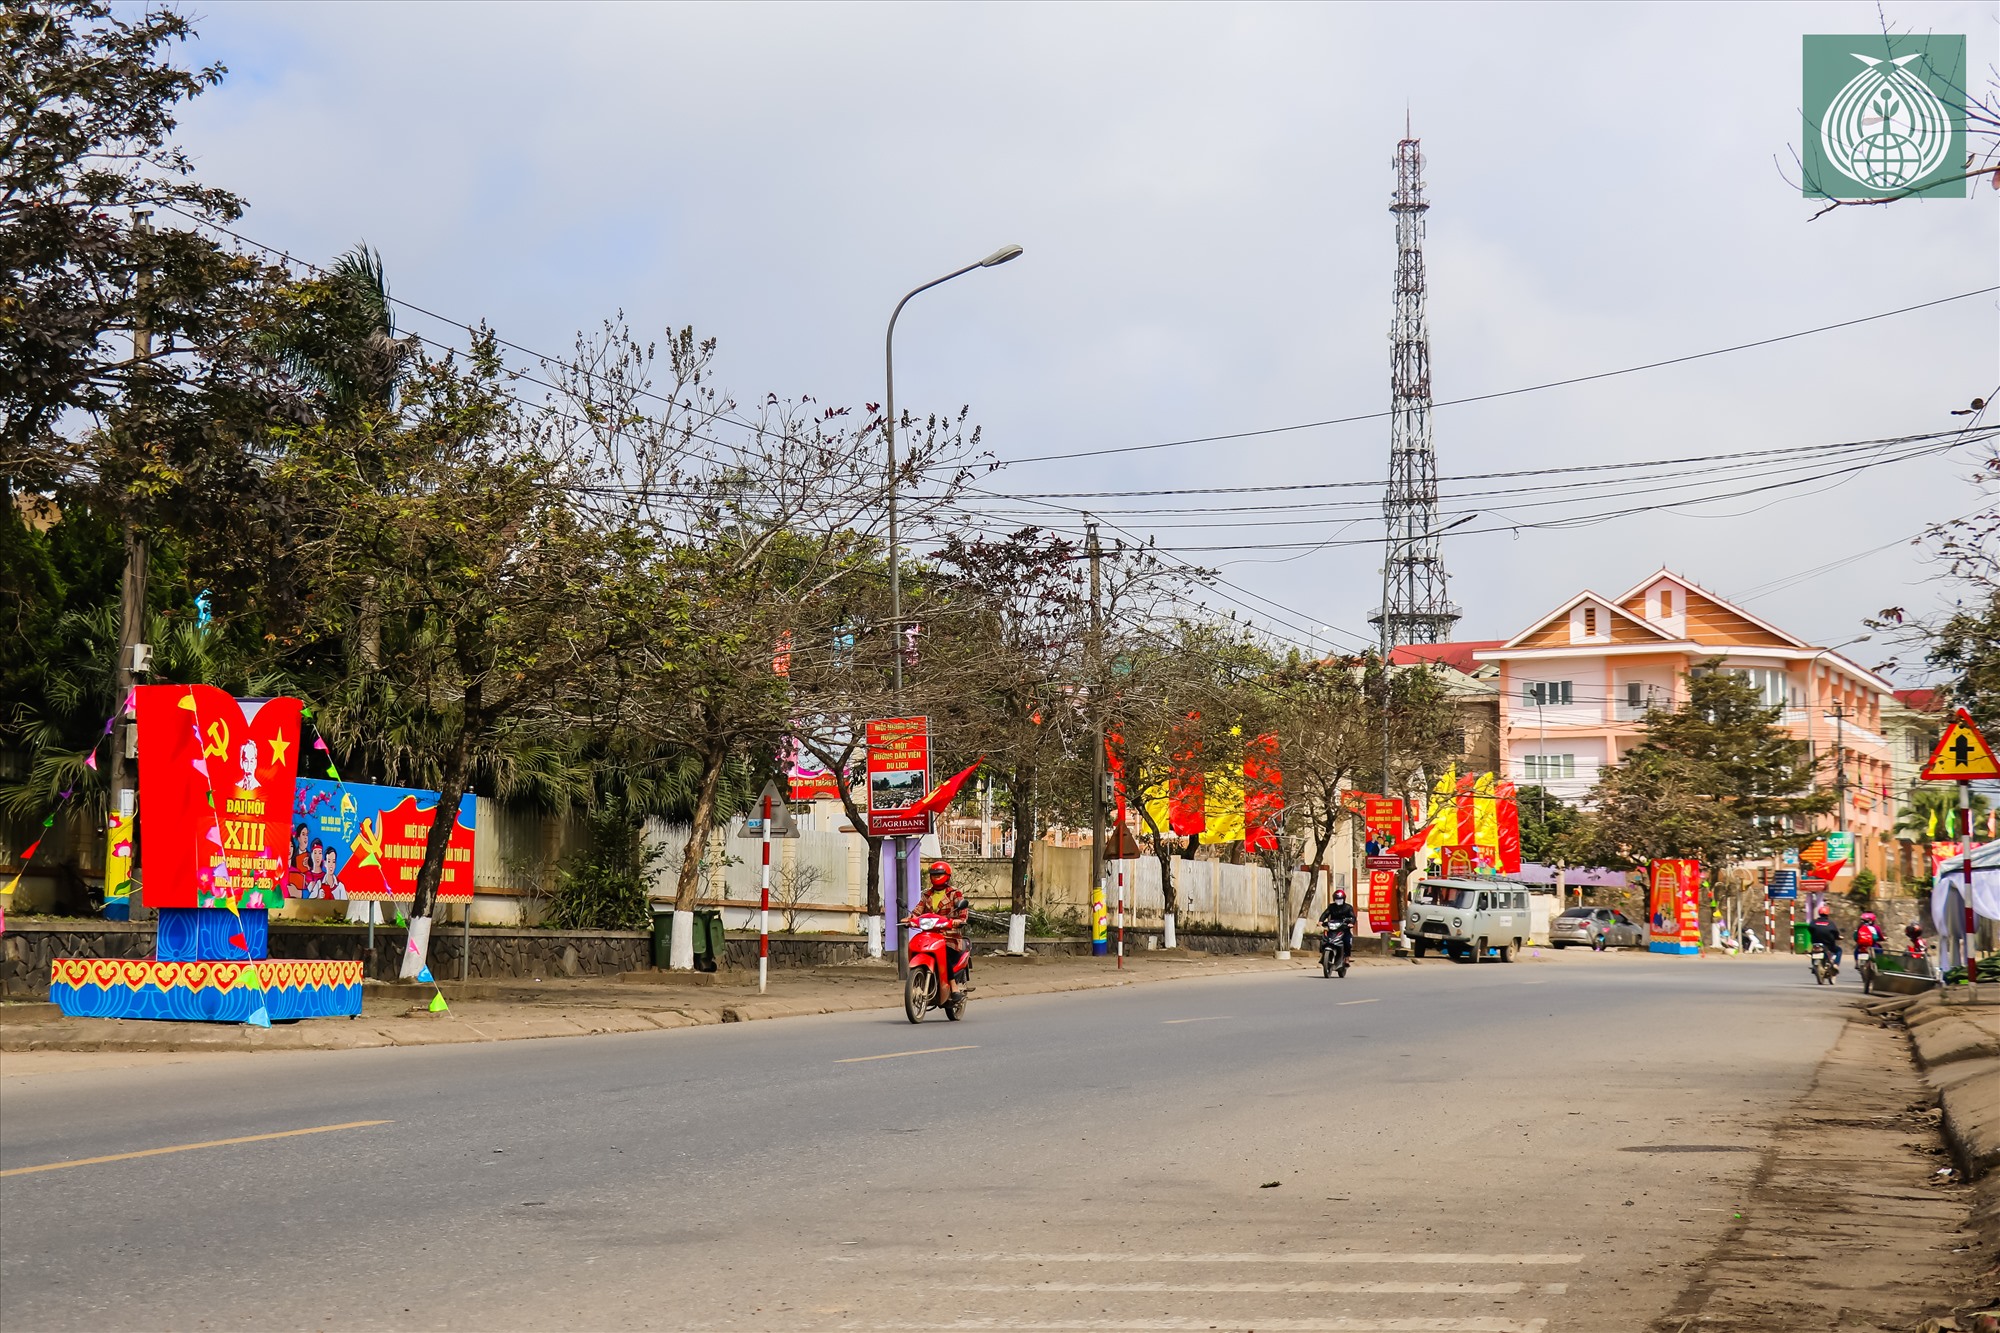 Các tuyến phố huyện miền núi Hướng Hóa được trang hoàng rực rỡ cờ, hoa, băng rôn...